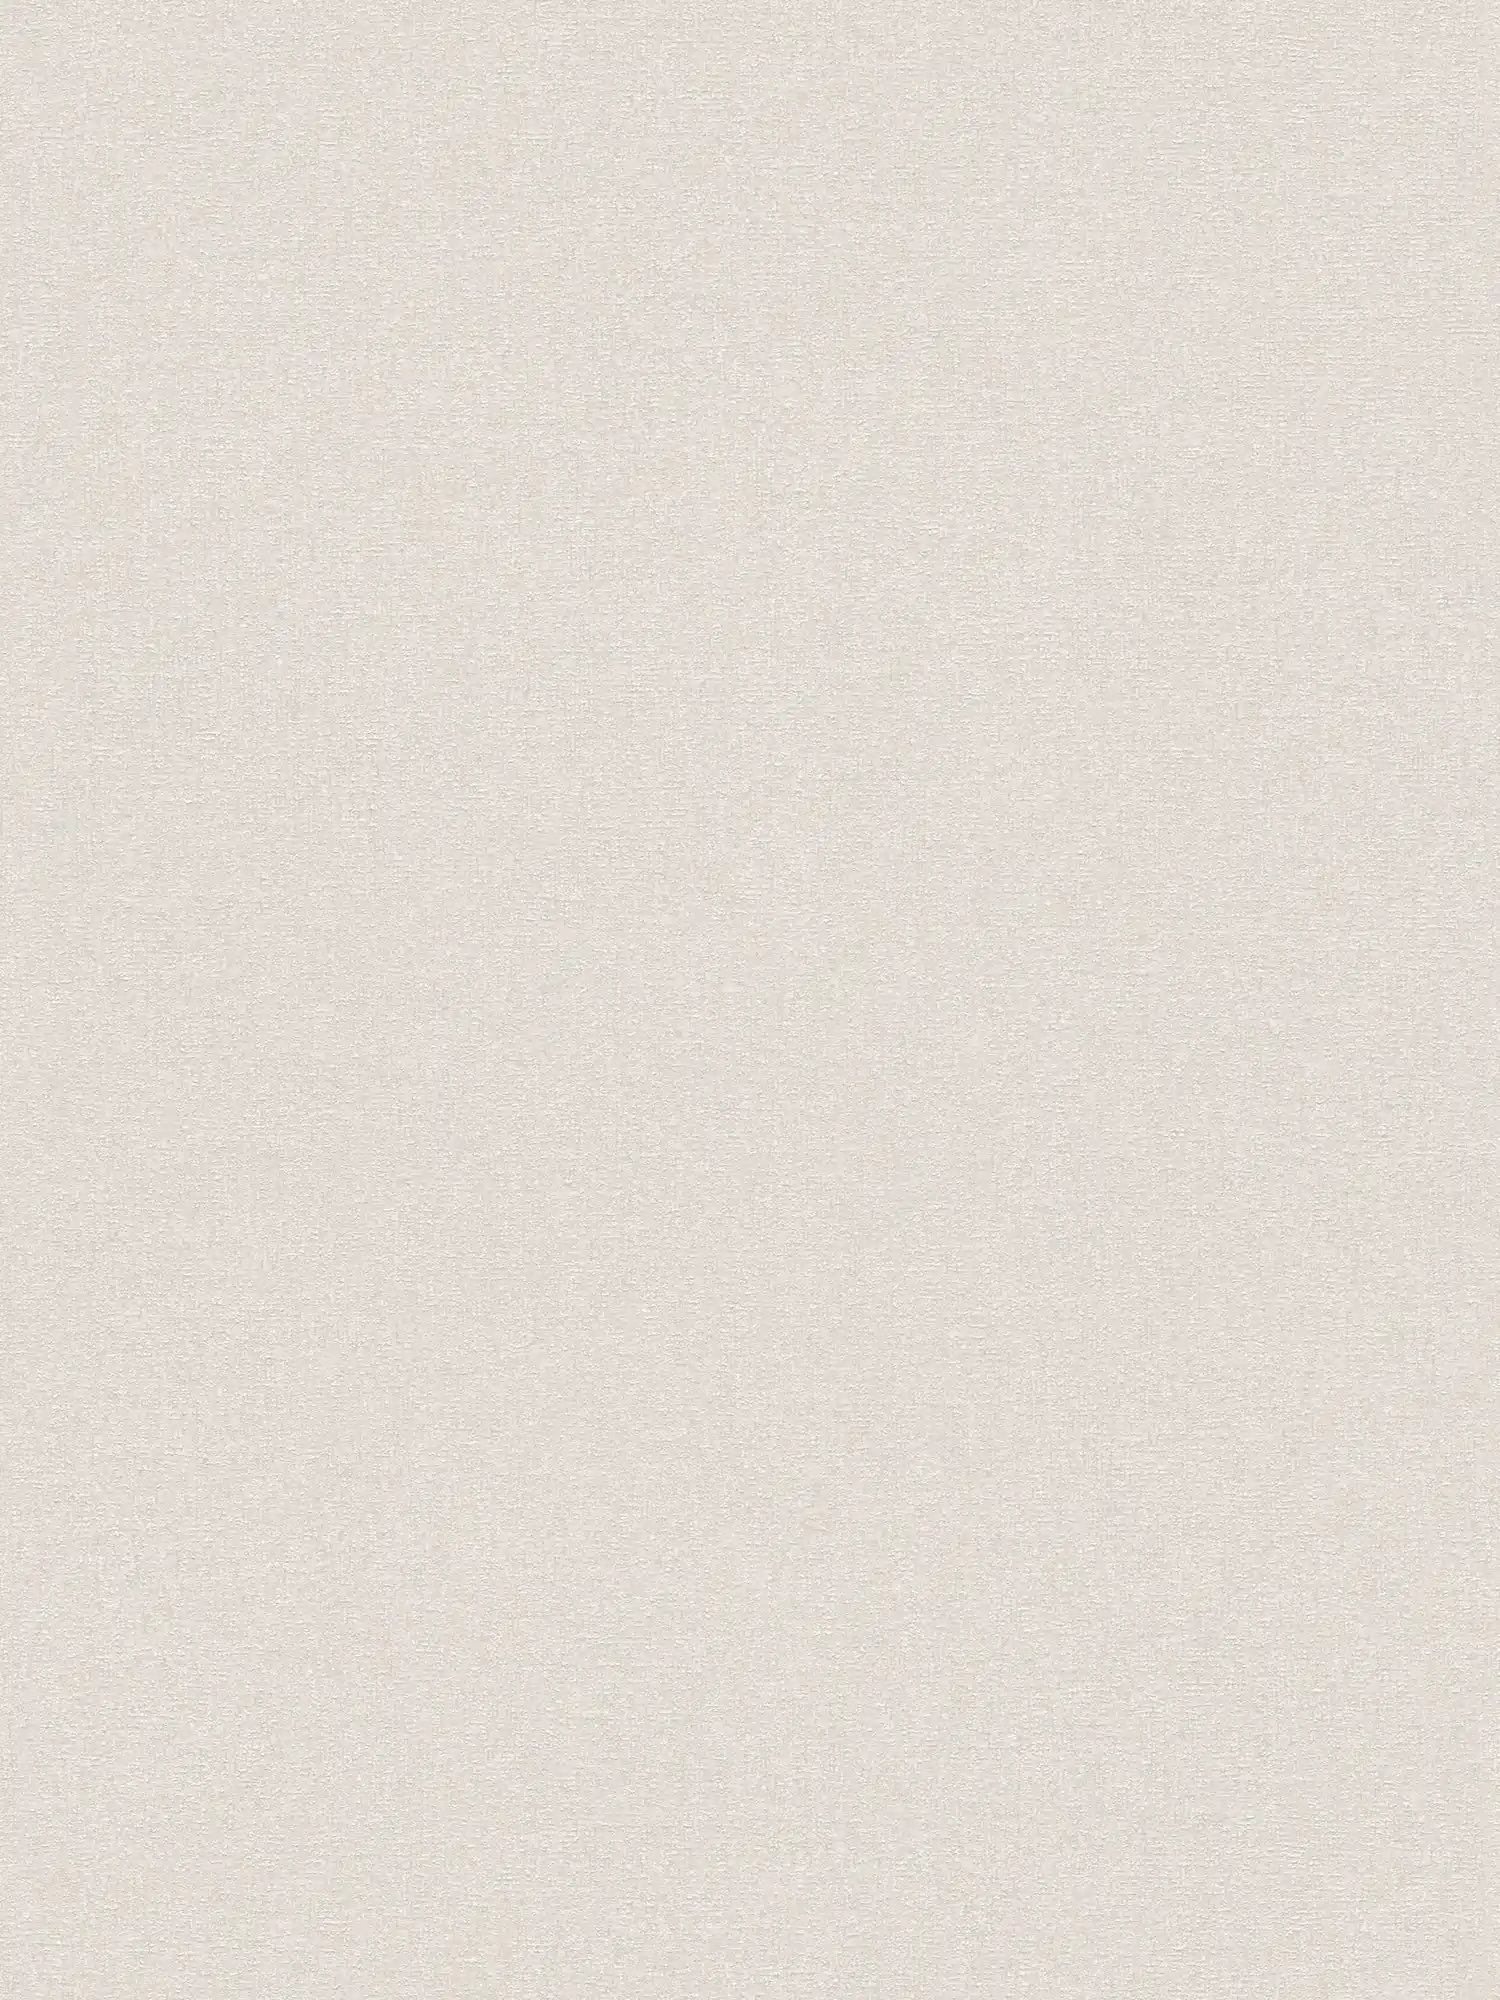 Carta da parati in tessuto non tessuto con struttura fine - crema, bianco, grigio
